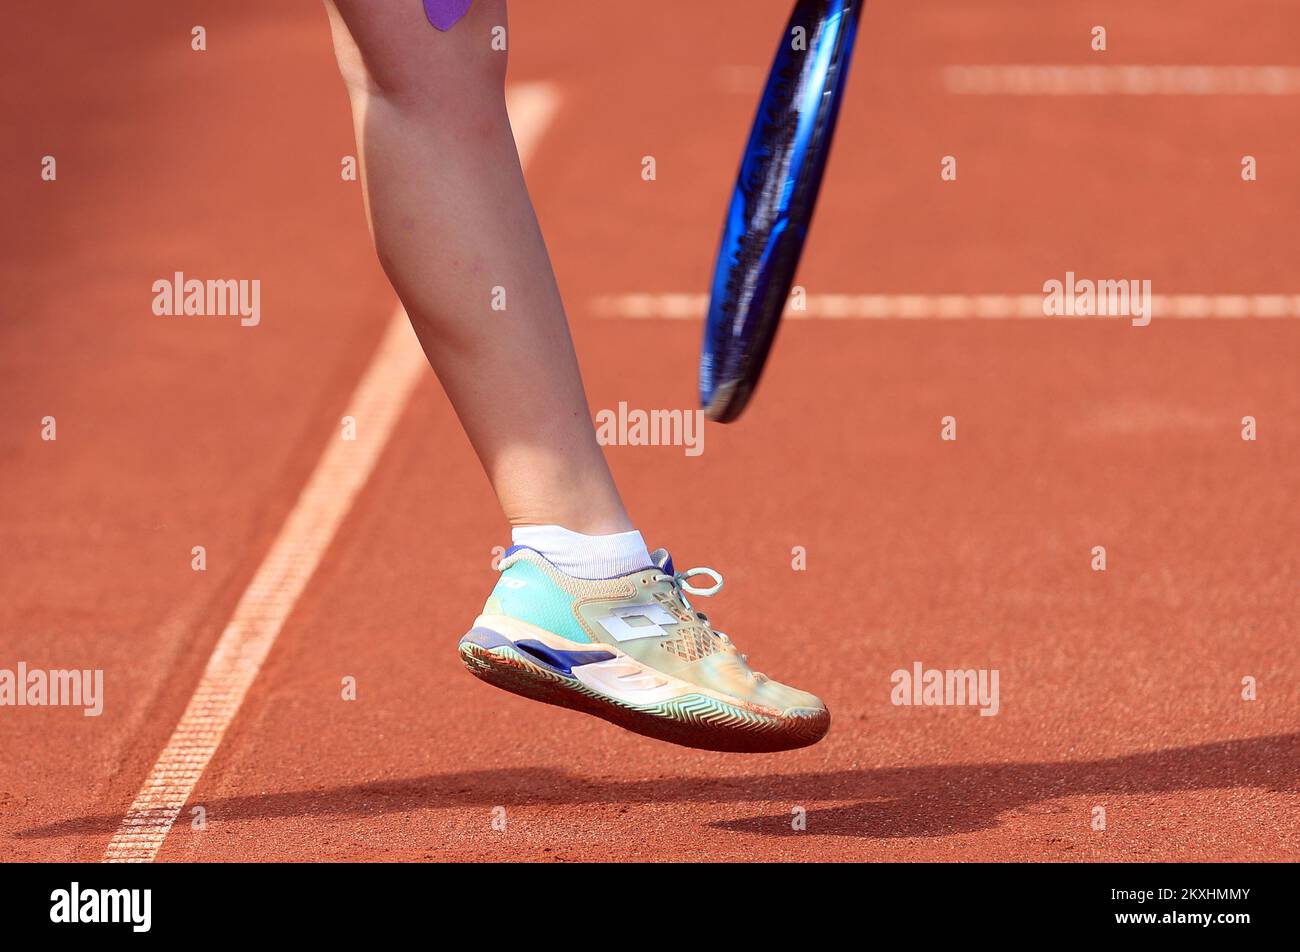 Kamilla Rakhimova de Russie pendant le match entre Antonia Ruzic de Croatie lors du tournoi de tennis Zagreb 2020 W25 à Zagreb, Croatie sur 16 septembre 2020. Photo: Slavko Midzor/PIXSELL Banque D'Images